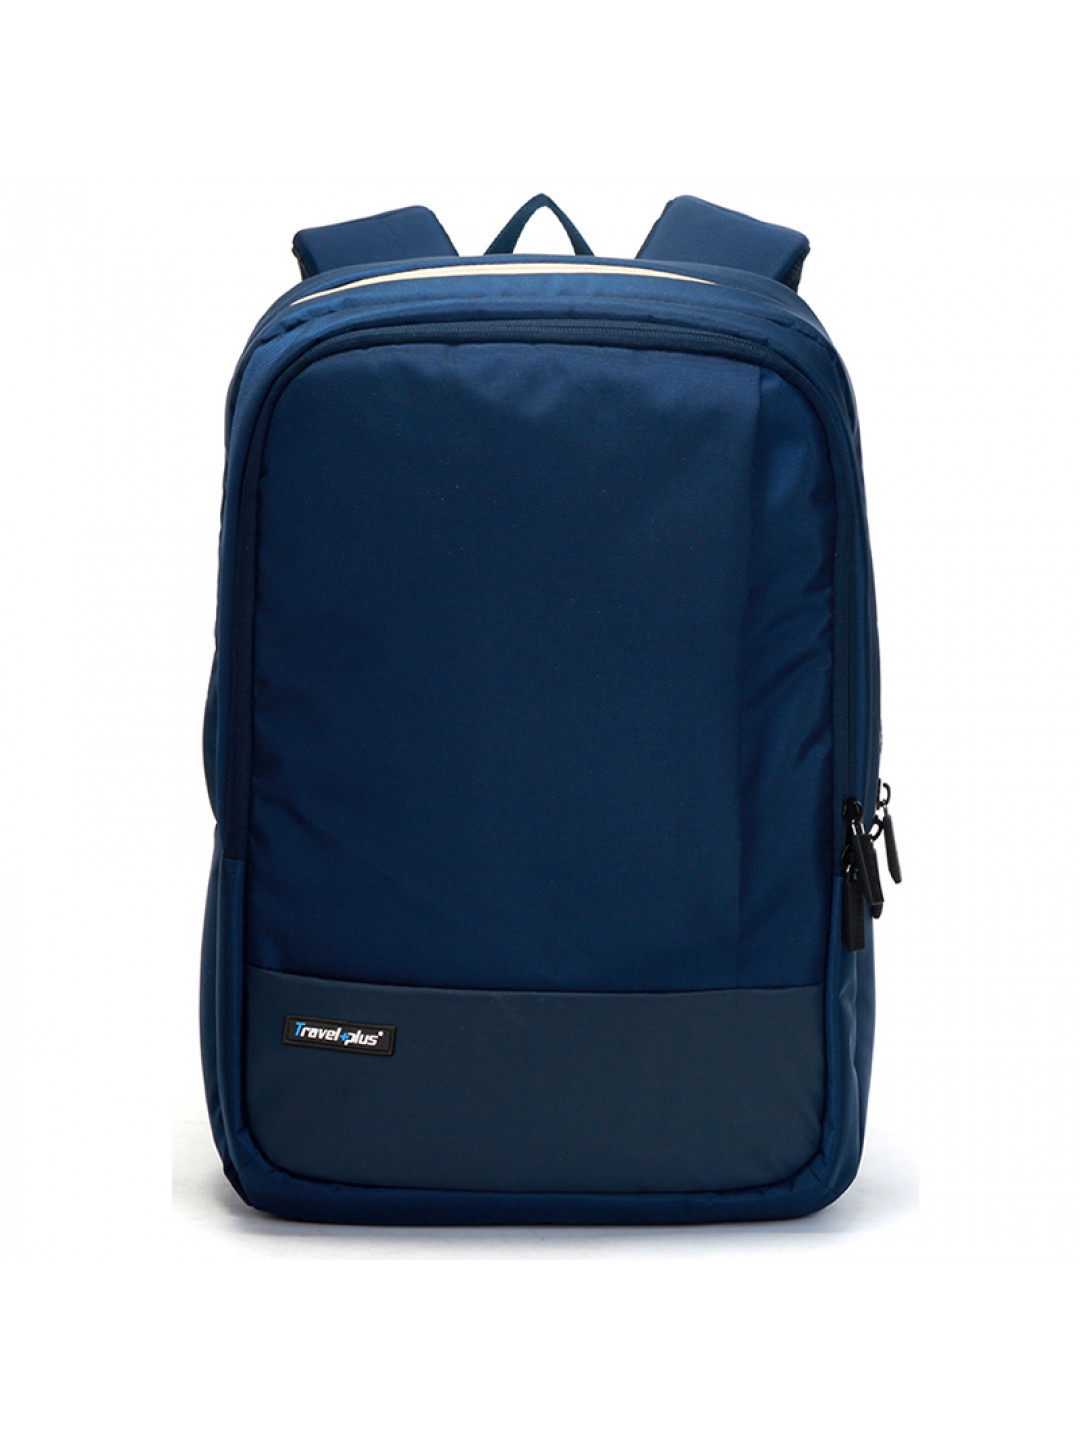 Kvalitní školní a cestovní batoh modrý – Travel plus 0100